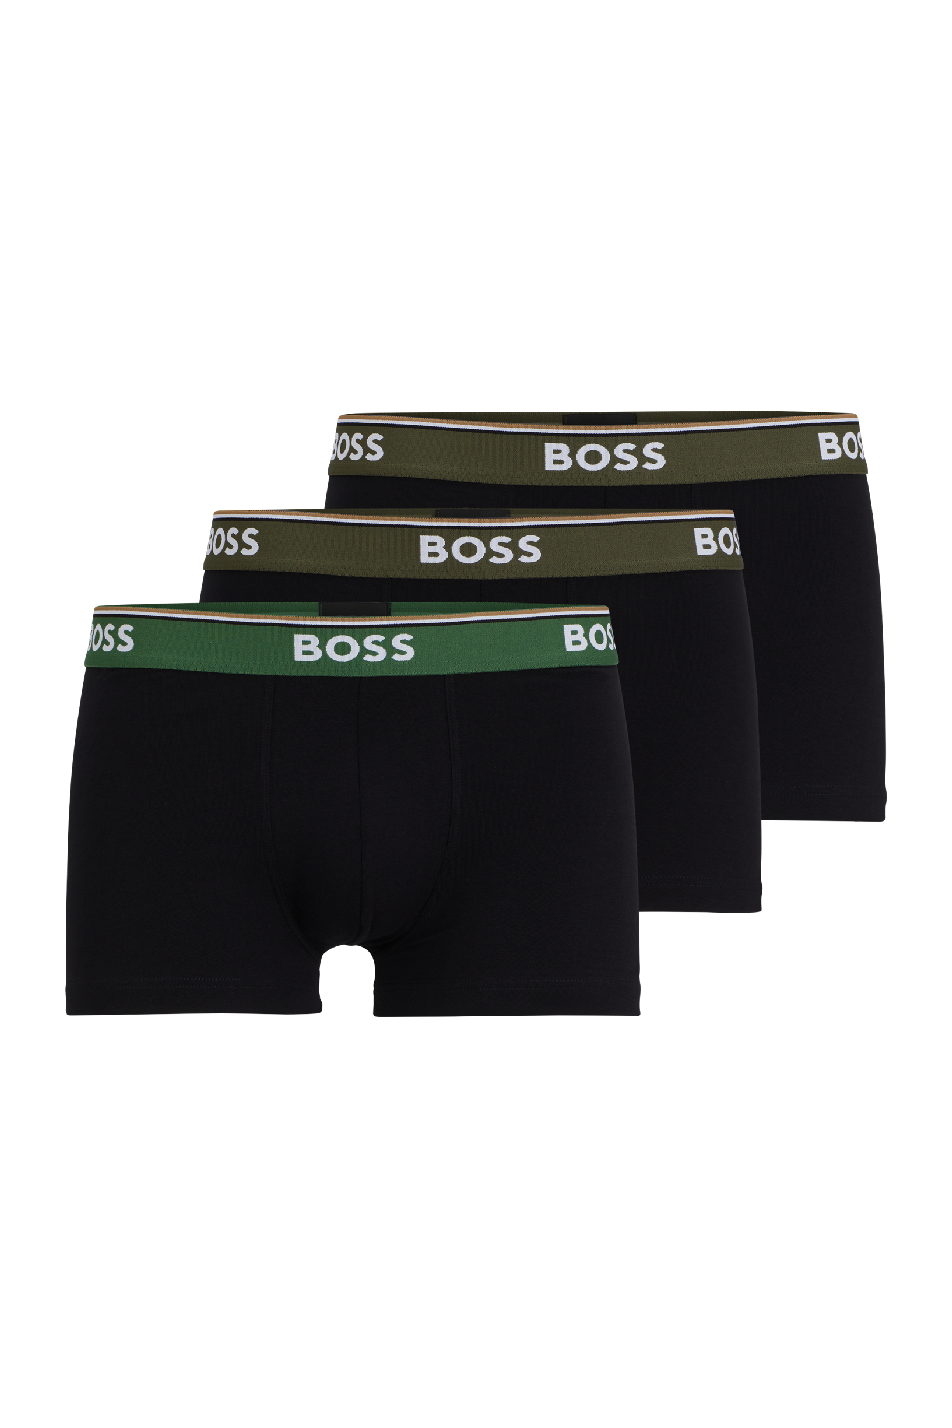 Boss 3 Pack Men's Power Trunk